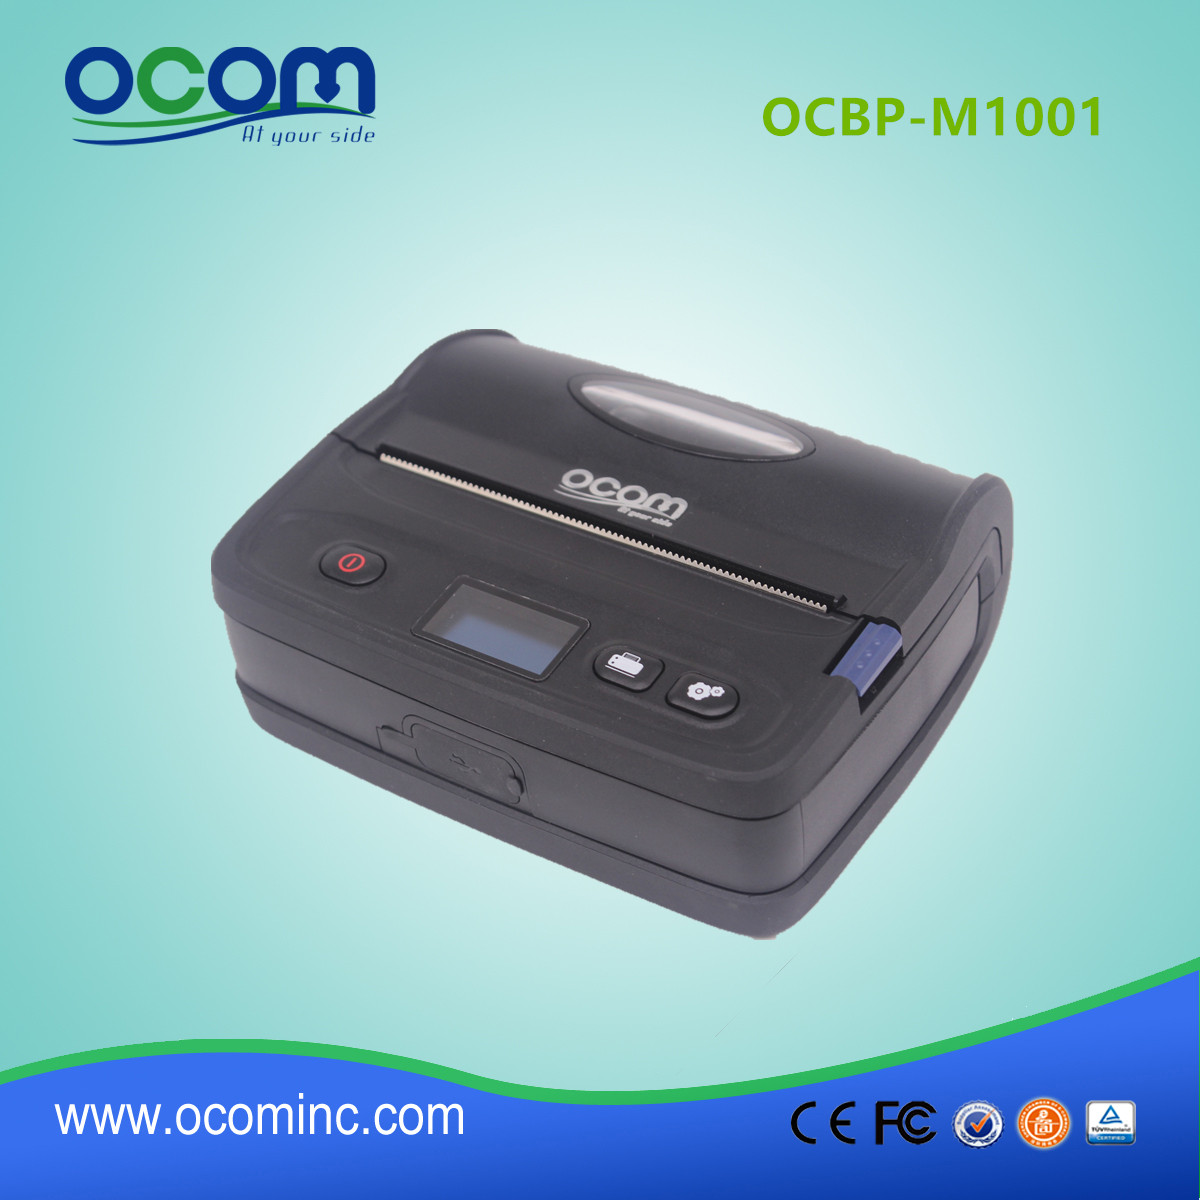 OCBP-M1001 удобный портативный bluetooth термодатчик принтер